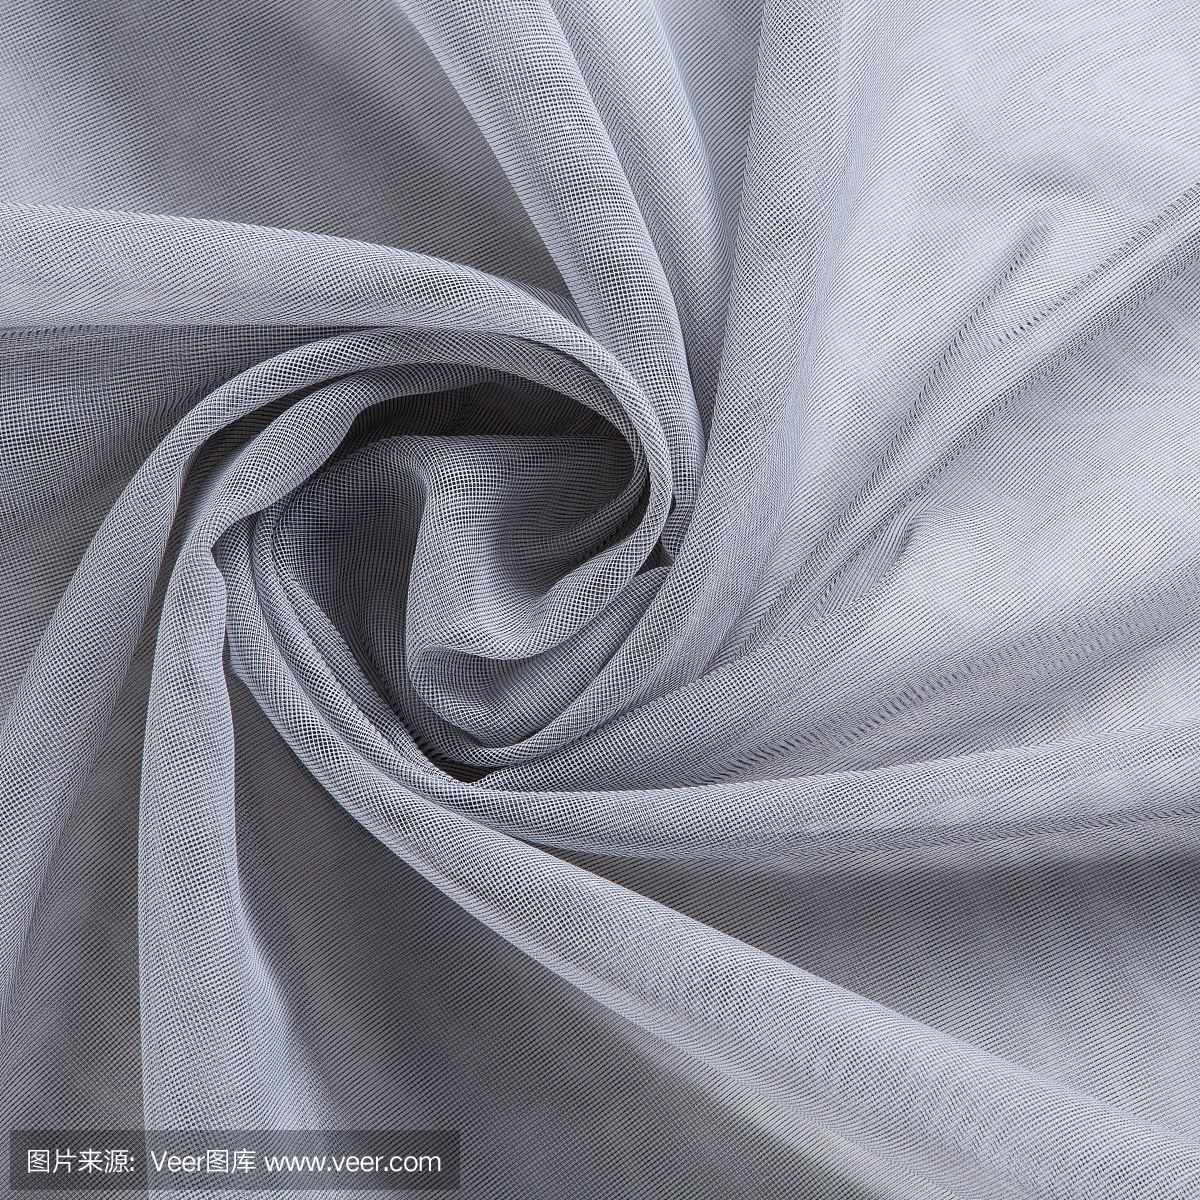 灰色薄窗帘织物,薄纱或透明硬纱,有褶